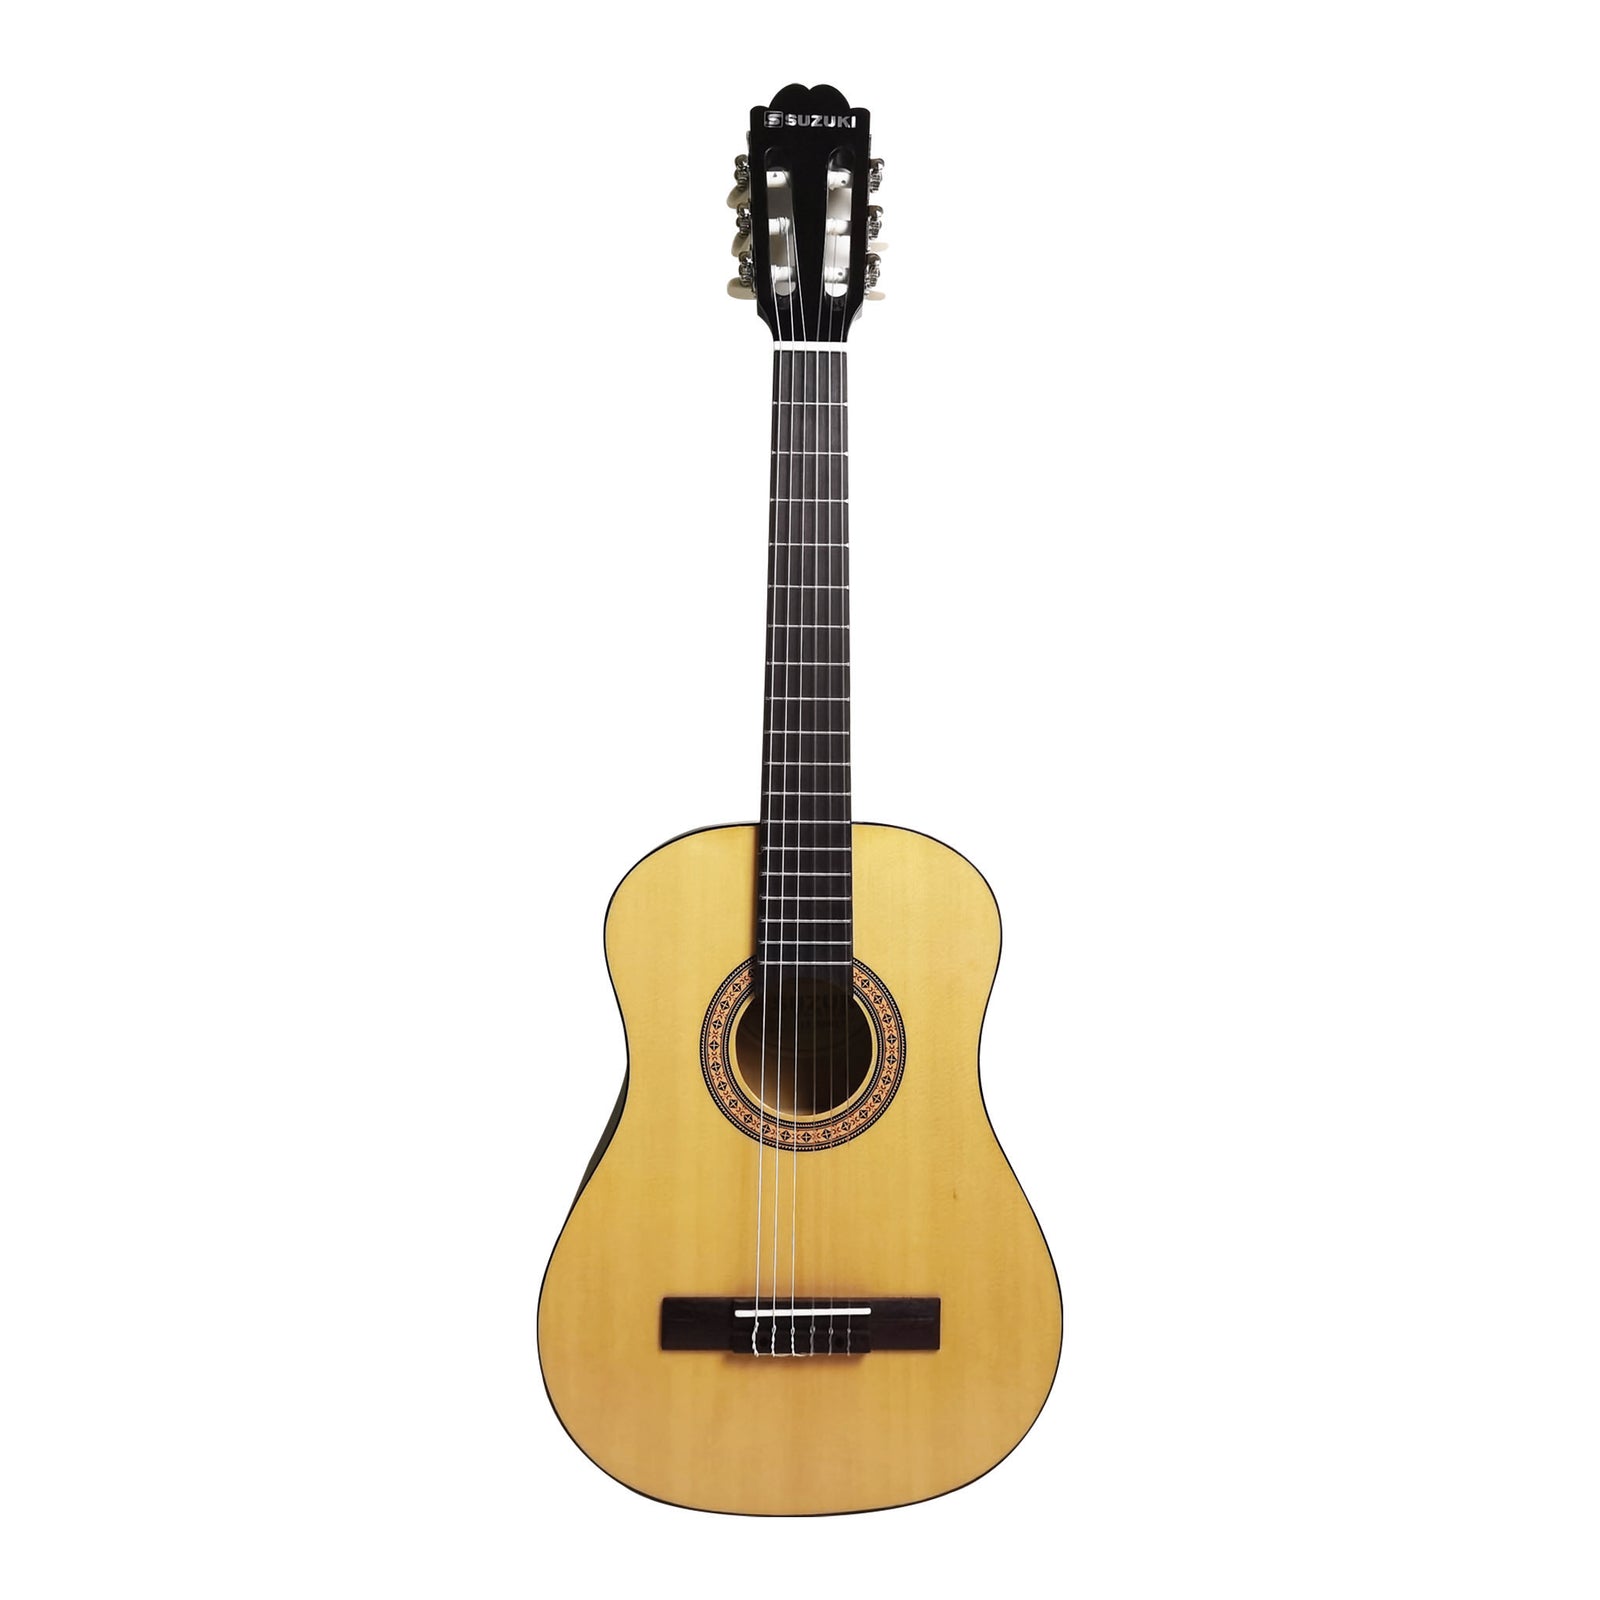 Suzuki SCG-2S 4/4 Classical Guitar Natural